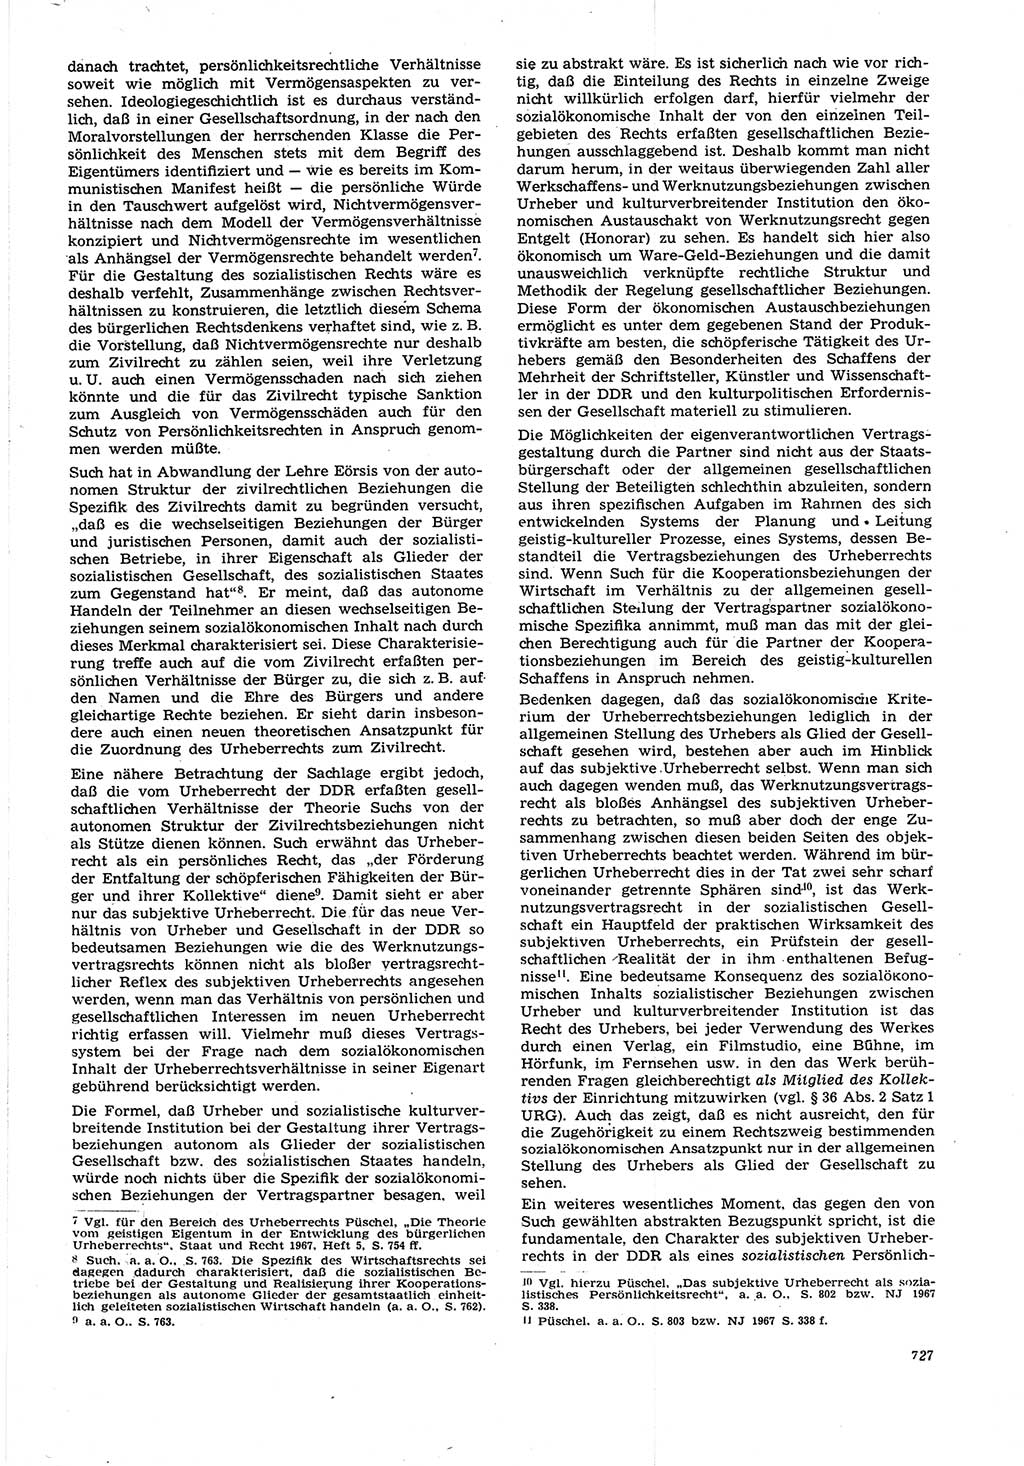 Neue Justiz (NJ), Zeitschrift für Recht und Rechtswissenschaft [Deutsche Demokratische Republik (DDR)], 21. Jahrgang 1967, Seite 727 (NJ DDR 1967, S. 727)